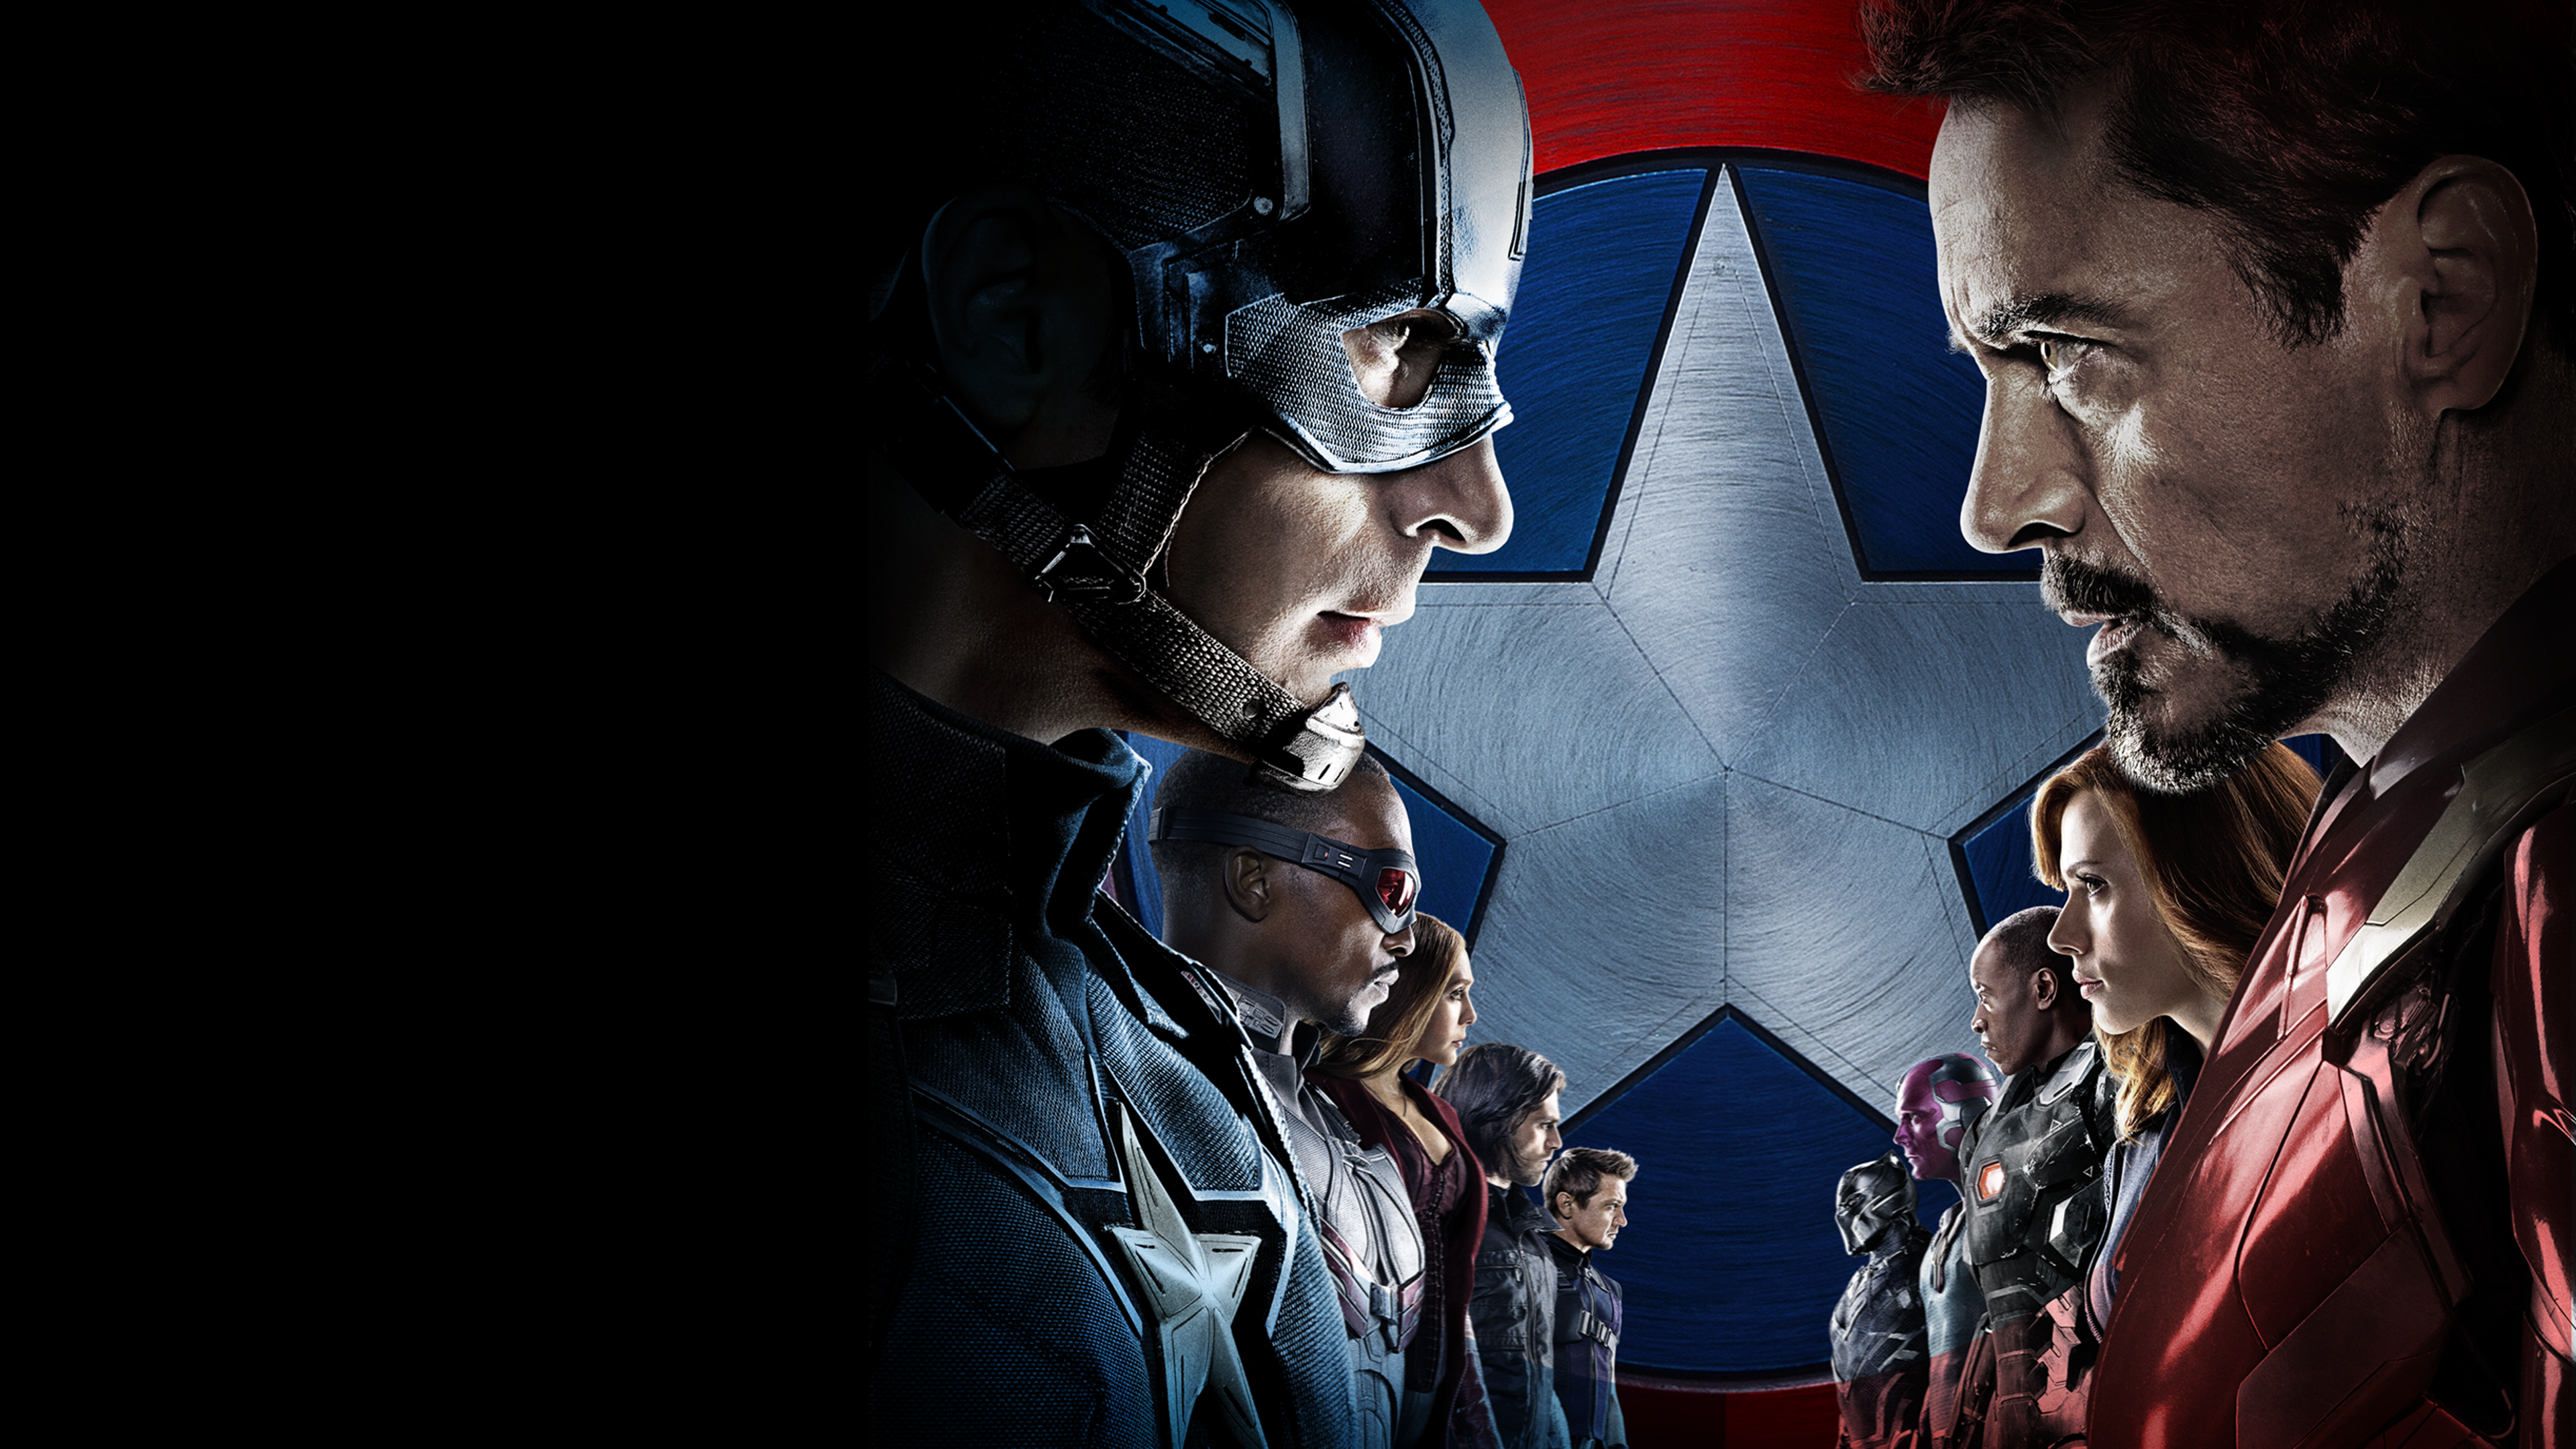 Marvel Studios' The First Avenger: Civil War